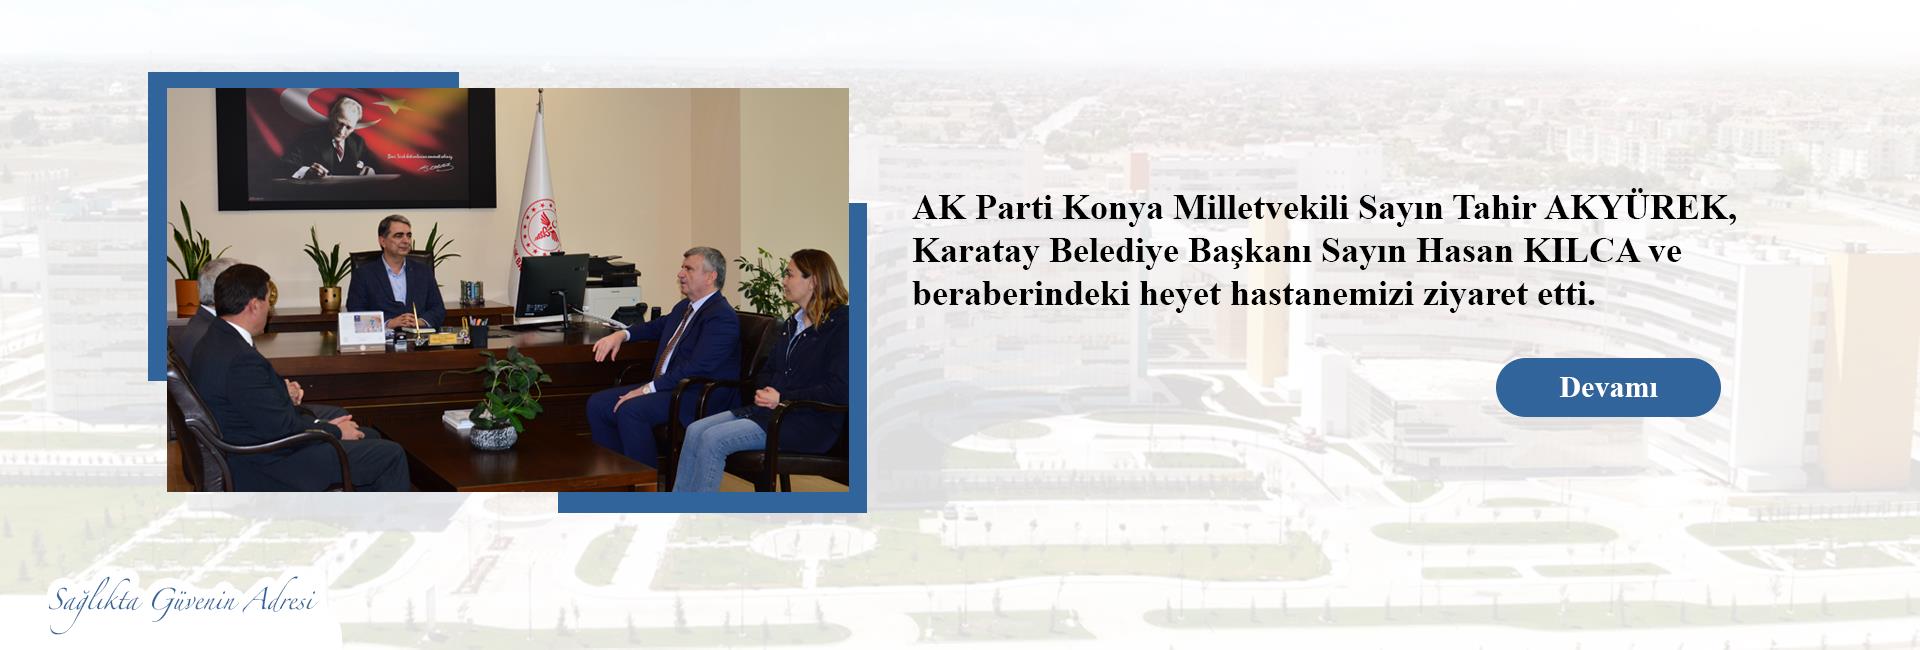 AK Parti Konya Milletvekili Sayın Tahir AKYÜREK, Karatay Belediye Başkanı Sayın Hasan KILCA ve beraberindeki heyet hastanemizi ziyaret etti. 